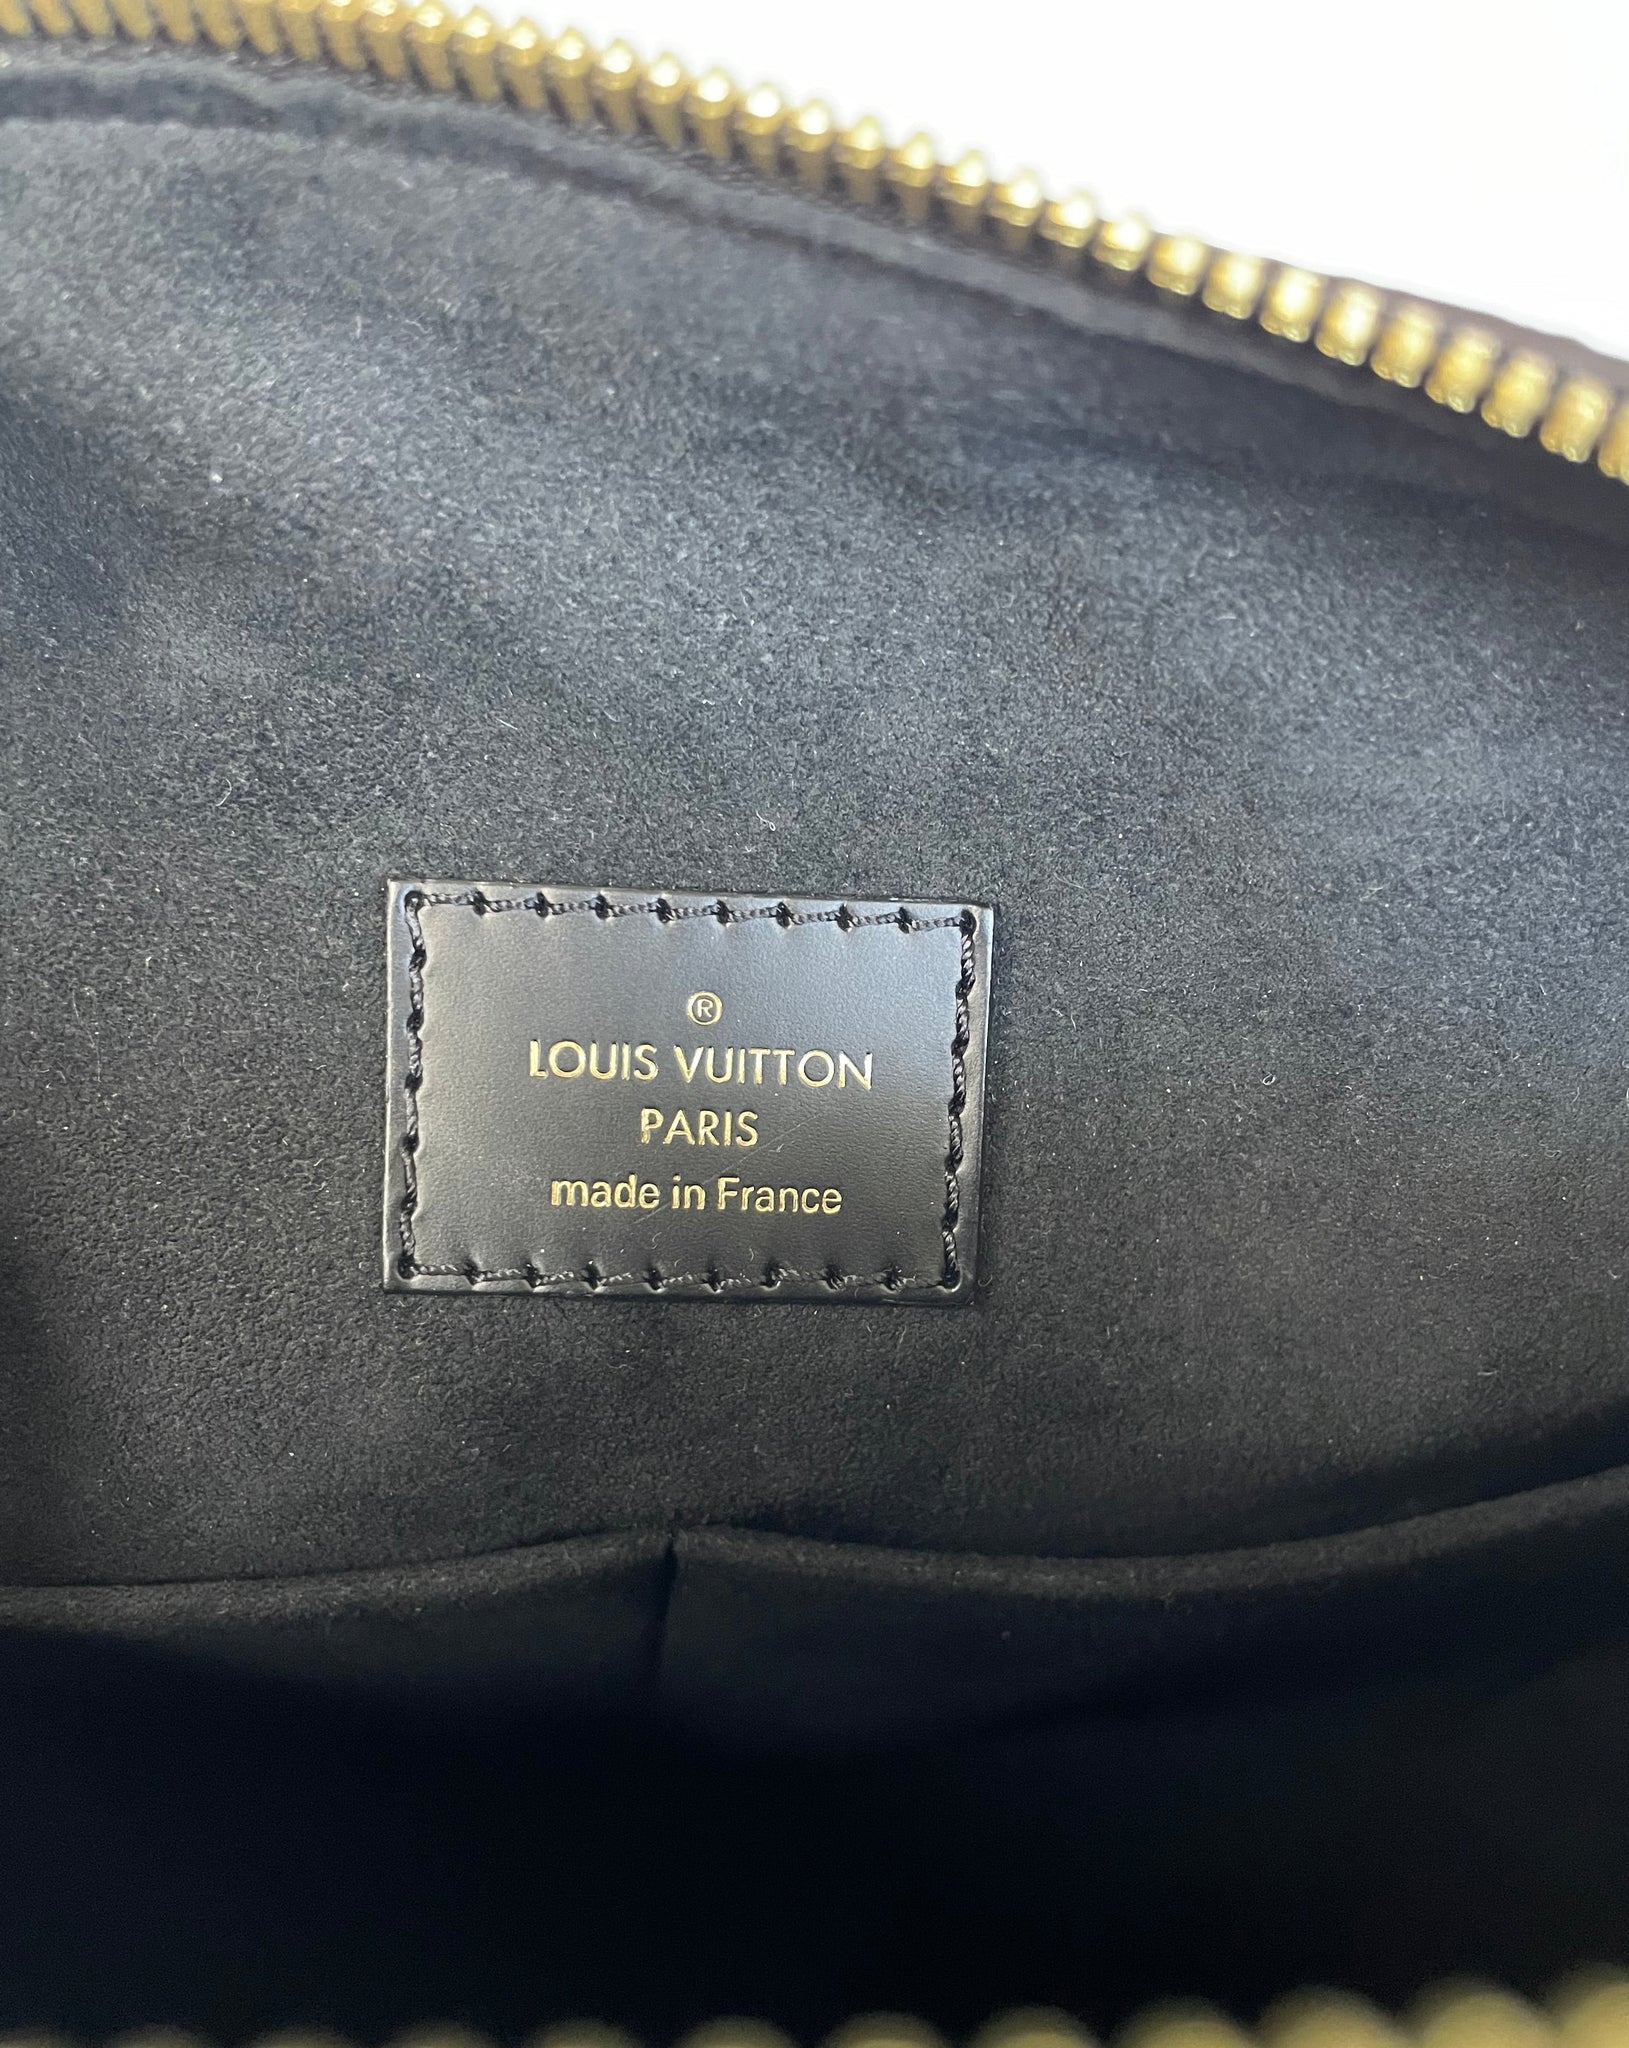 Louis Vuitton Monogram Kabuki Speedy 30 - Brown Handle Bags